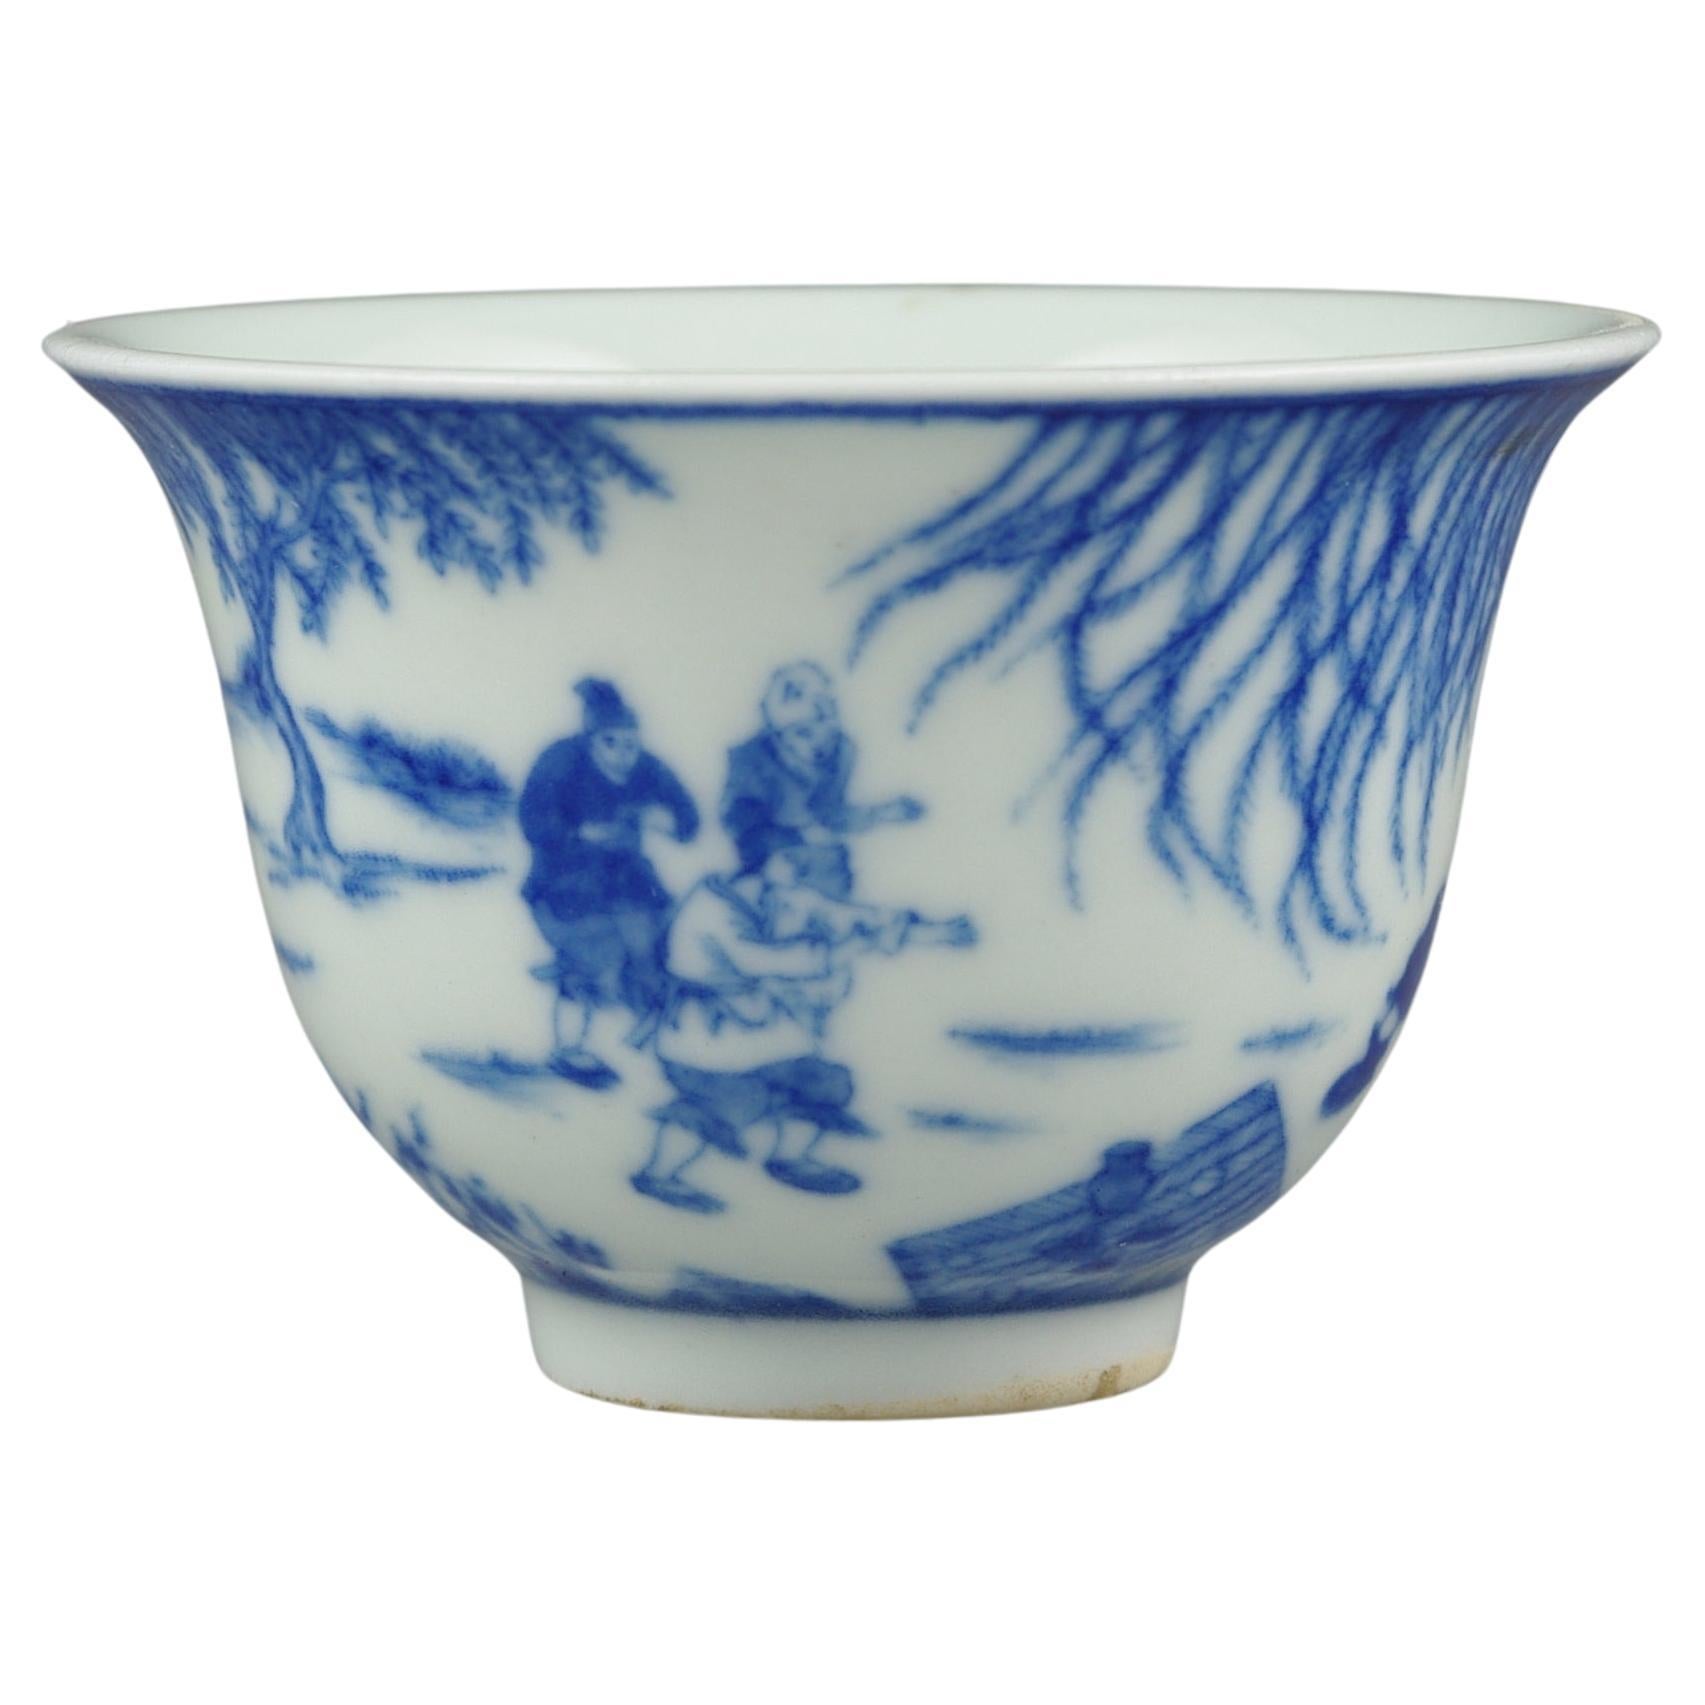 Ancienne tasse à vin chinoise bleue et blanche BW Qing Daoguang Marque 19ème siècle